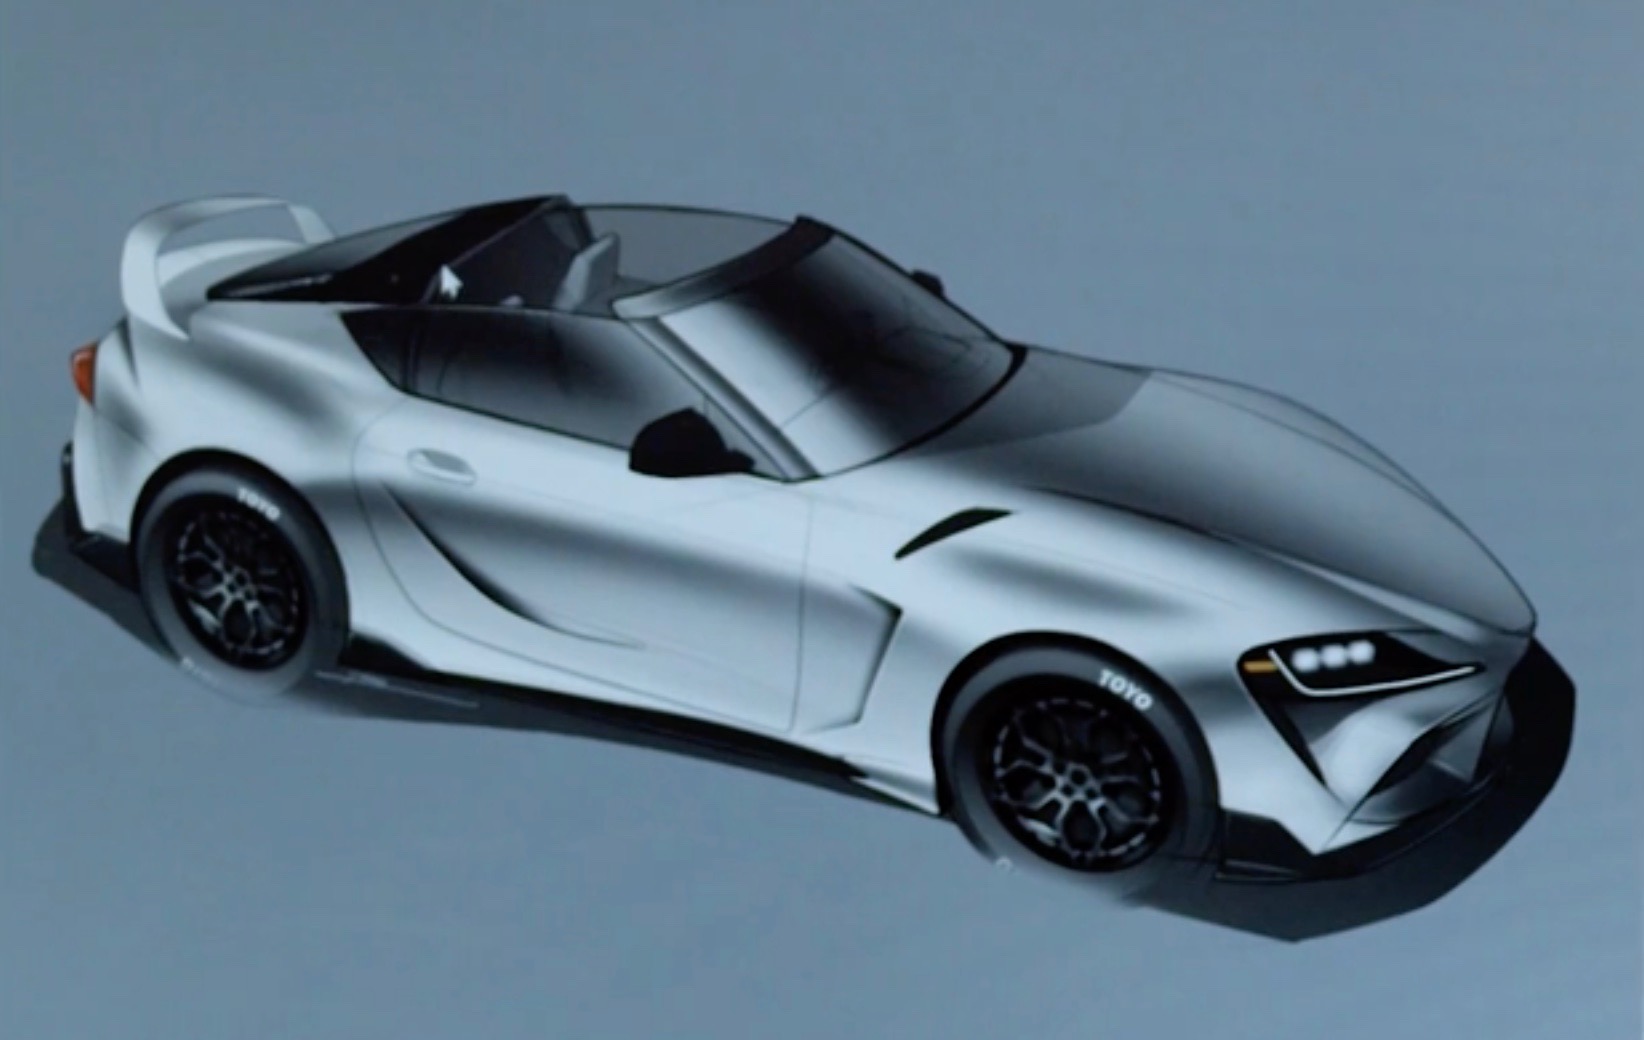 Toyota GR Supra Sport Top concept prepared for SEMA